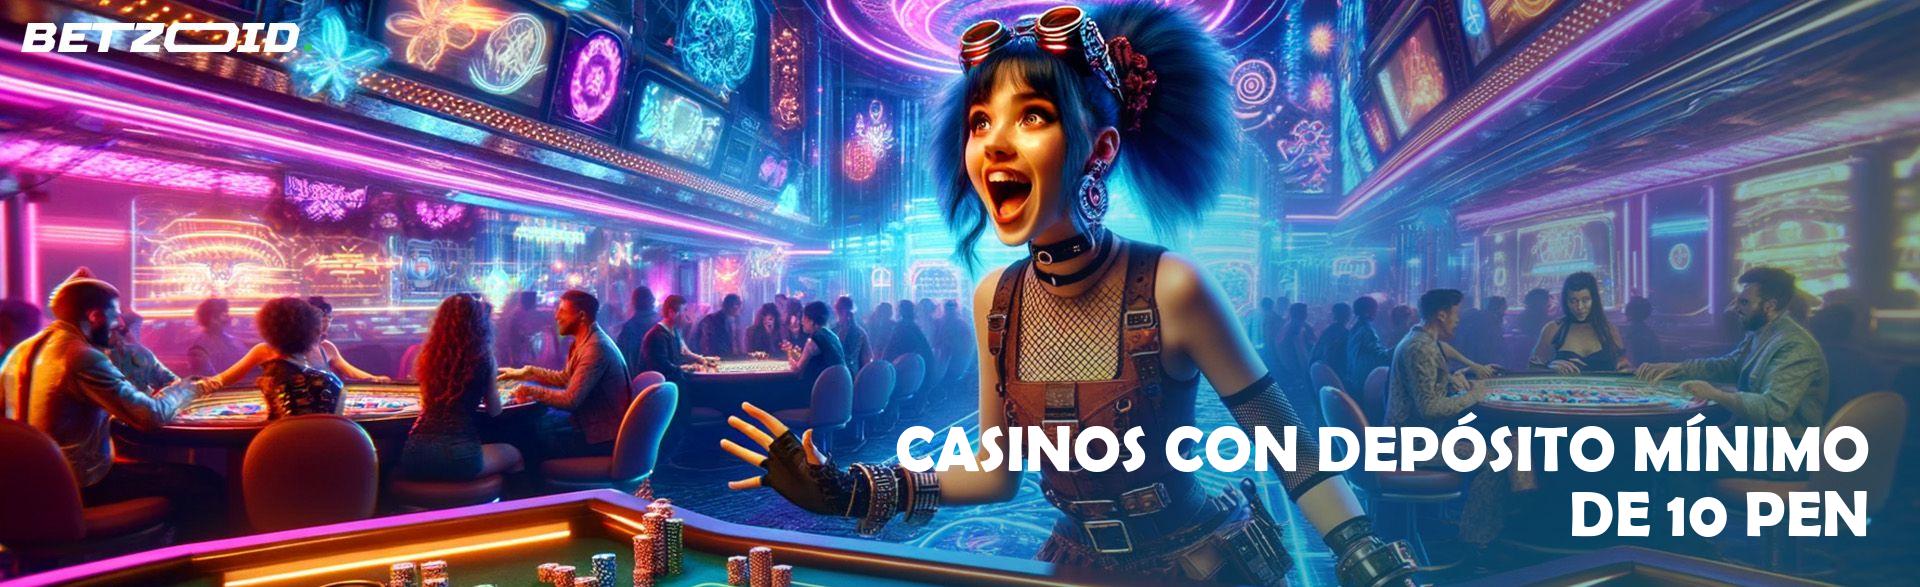 Casinos con Depósito Mínimo de 10 PEN.